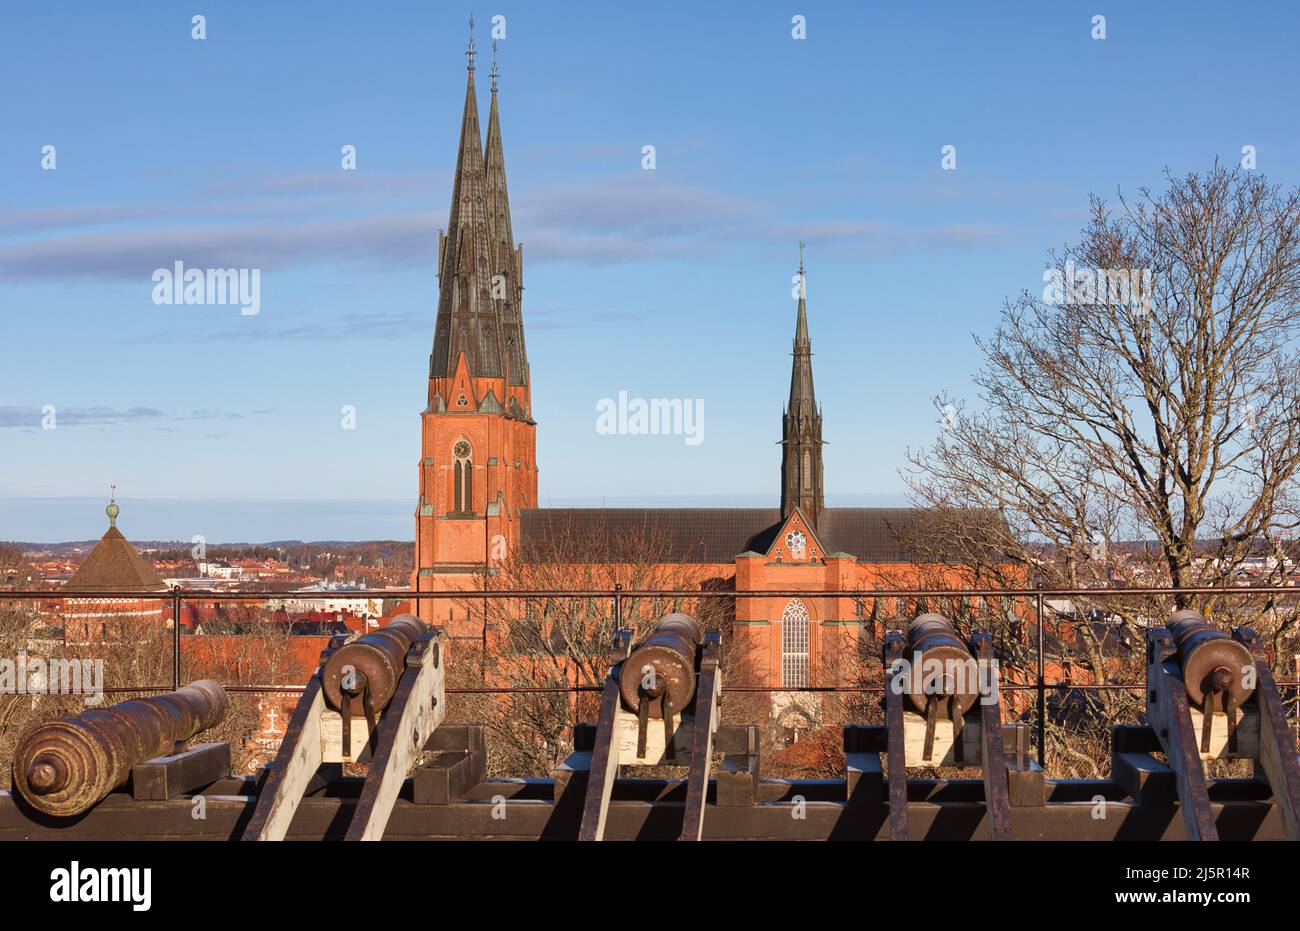 Agujas del gótico francés del siglo 13th Catedral de Uppsala (Uppsala Domkyrka) La más alta de Escandinavia, Uppsala, Uppland, Suecia Foto de stock